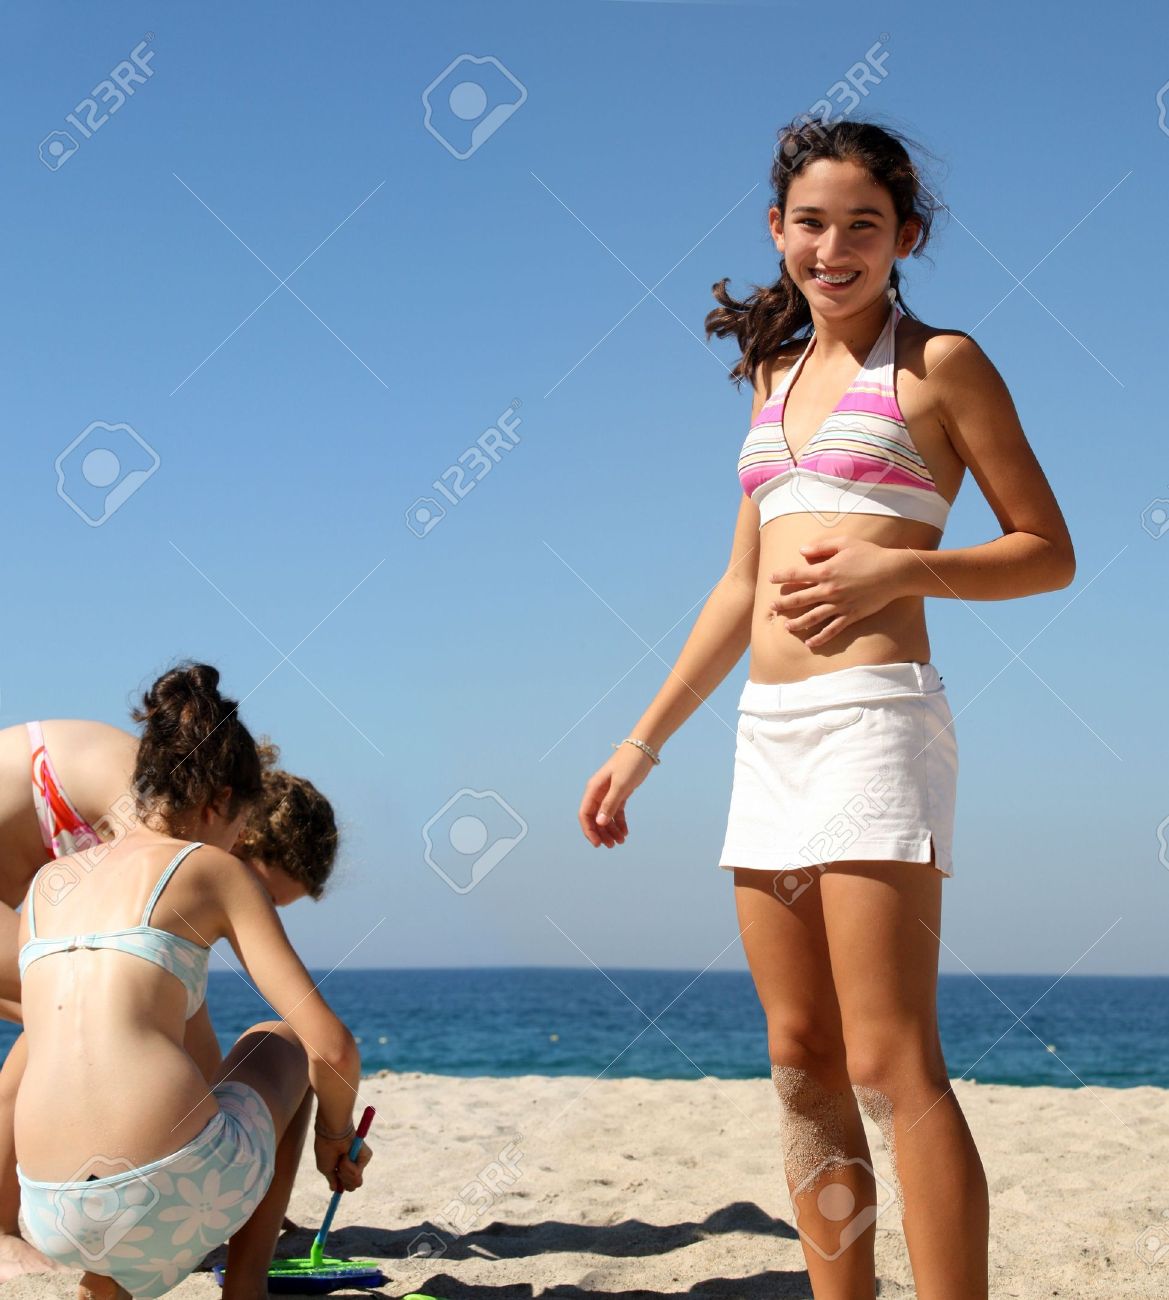 Teen girls at beach